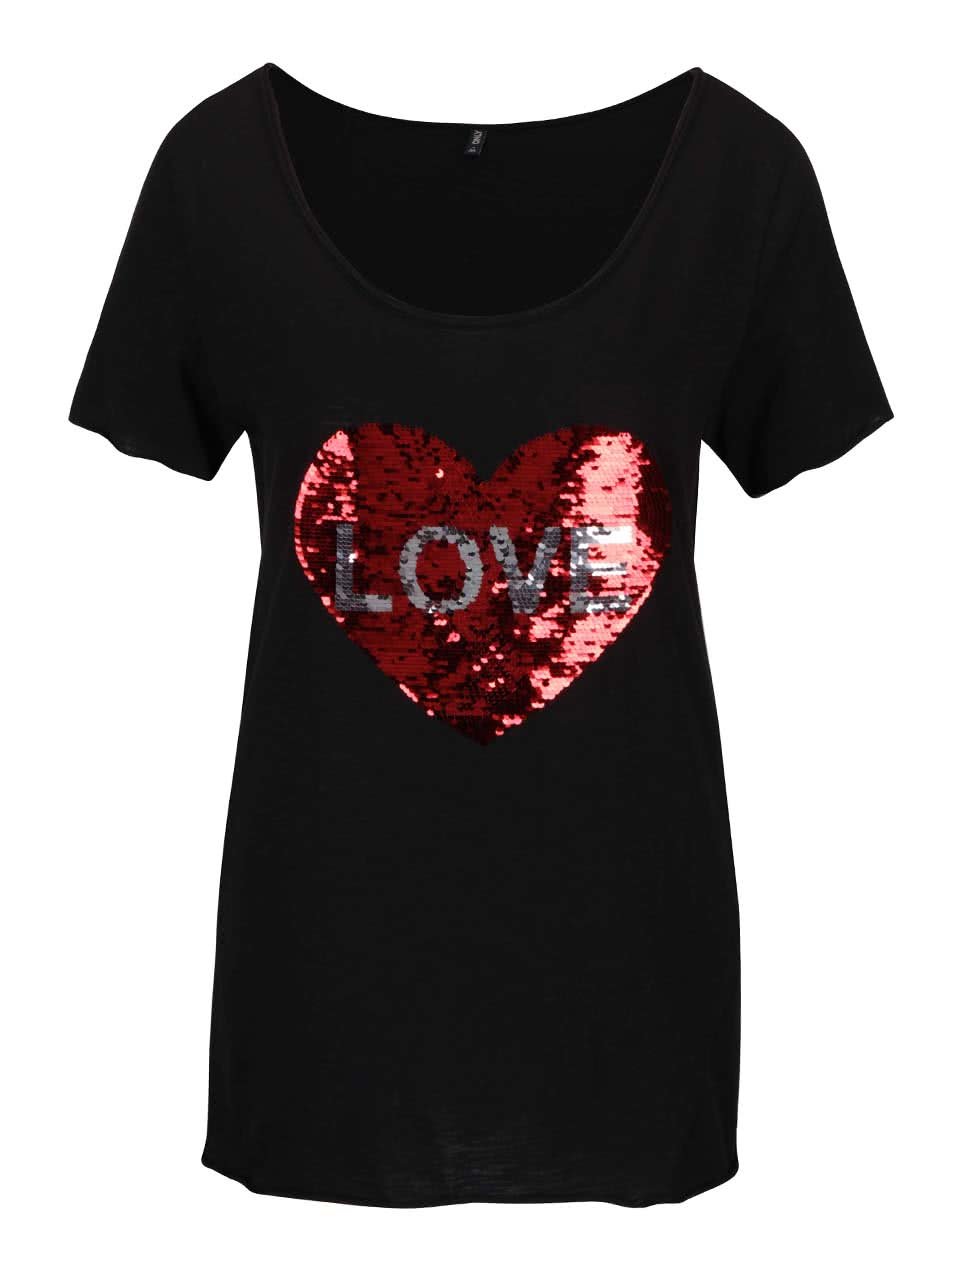 Černé tričko s flitrovaným motivem srdce ONLY Aura